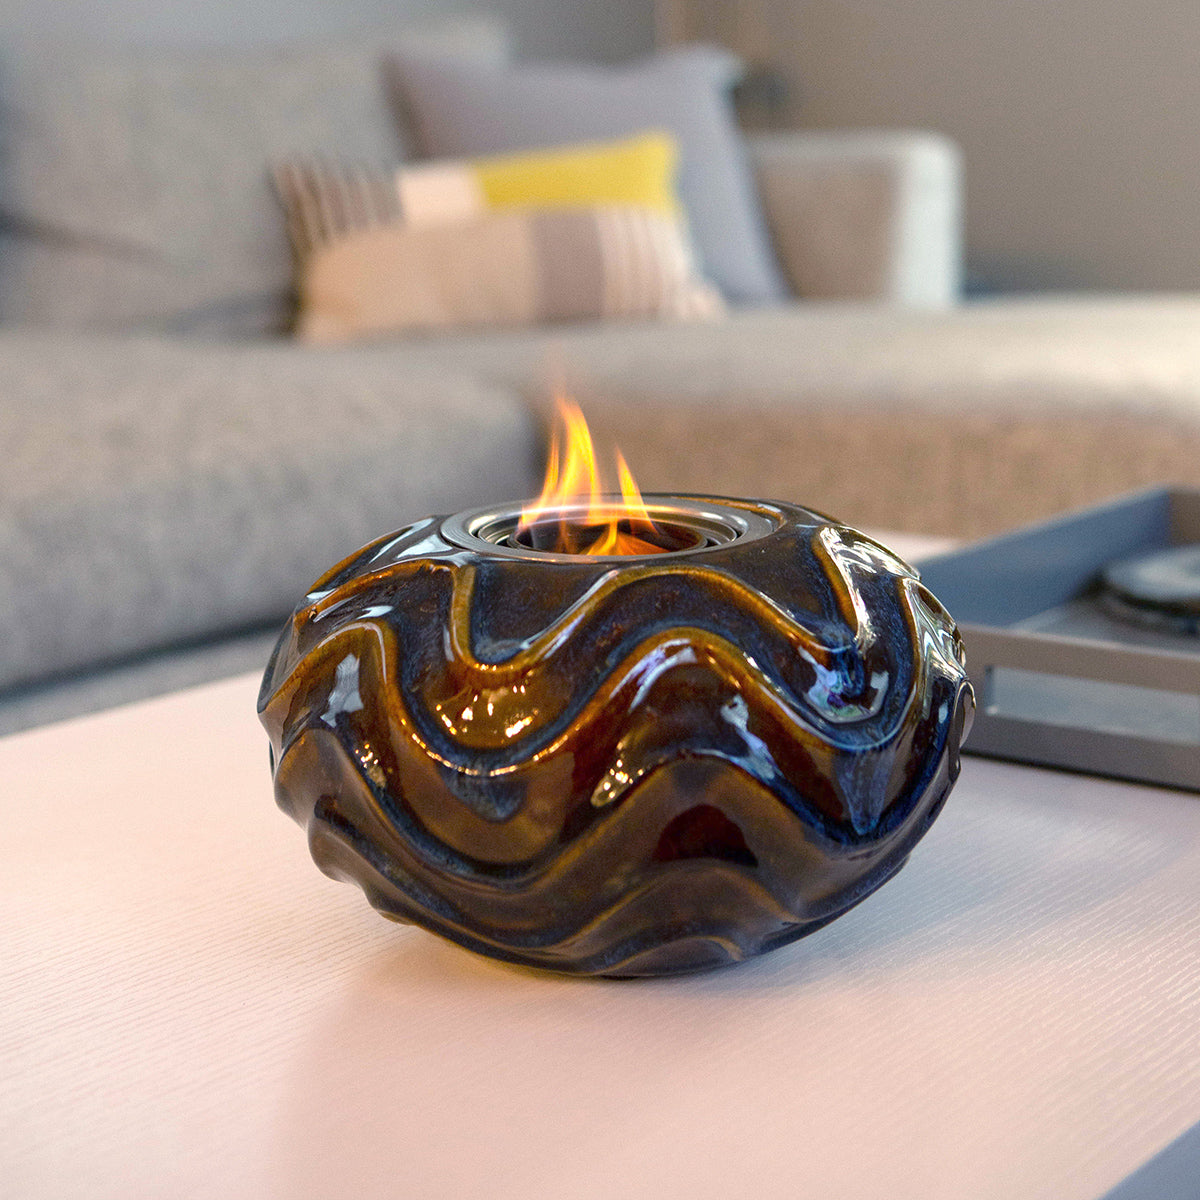 Oceana Ceramic Fireplace